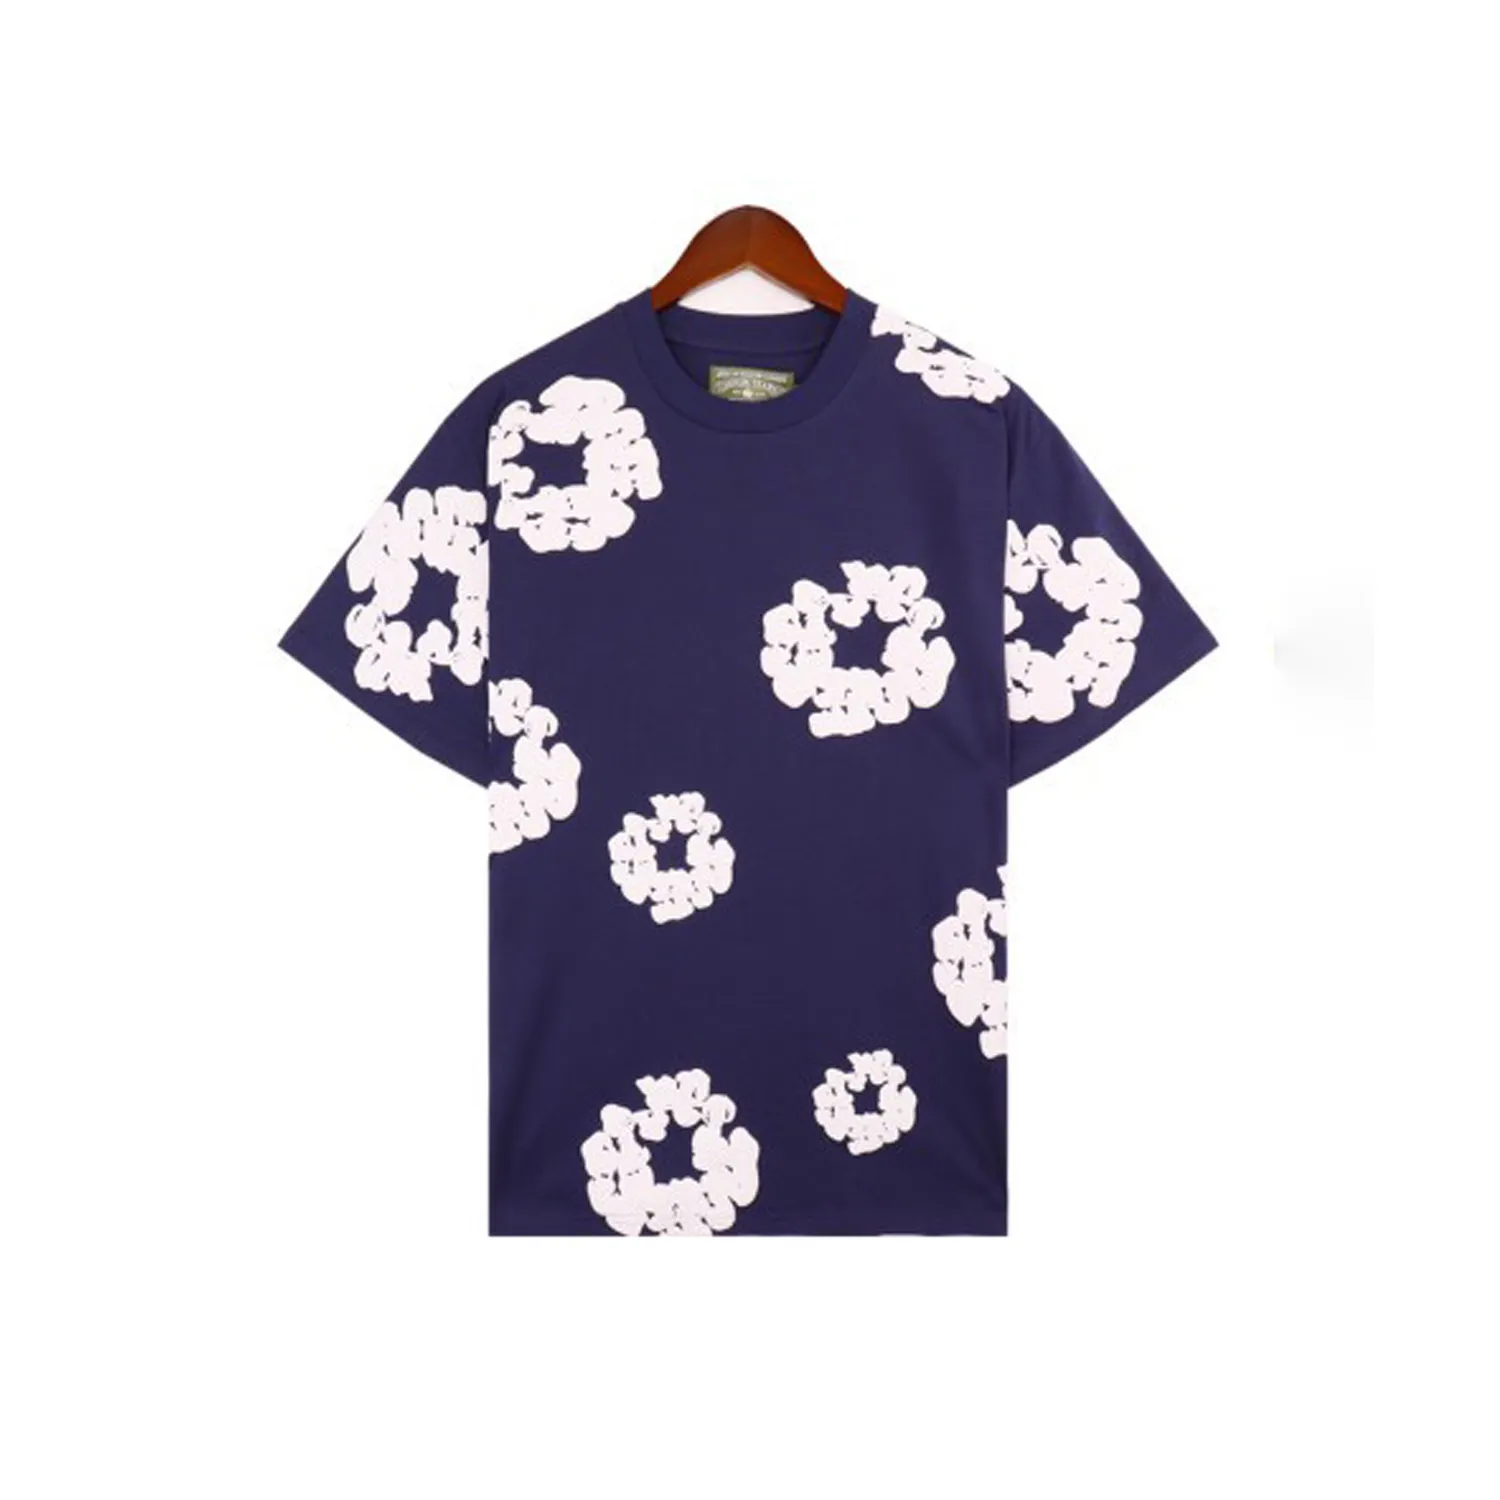 Tasarımcı T denim tee erkekler moda pamuk sudaderas gömlek kısa unisex büyük boy gömlek 1: 1 c3